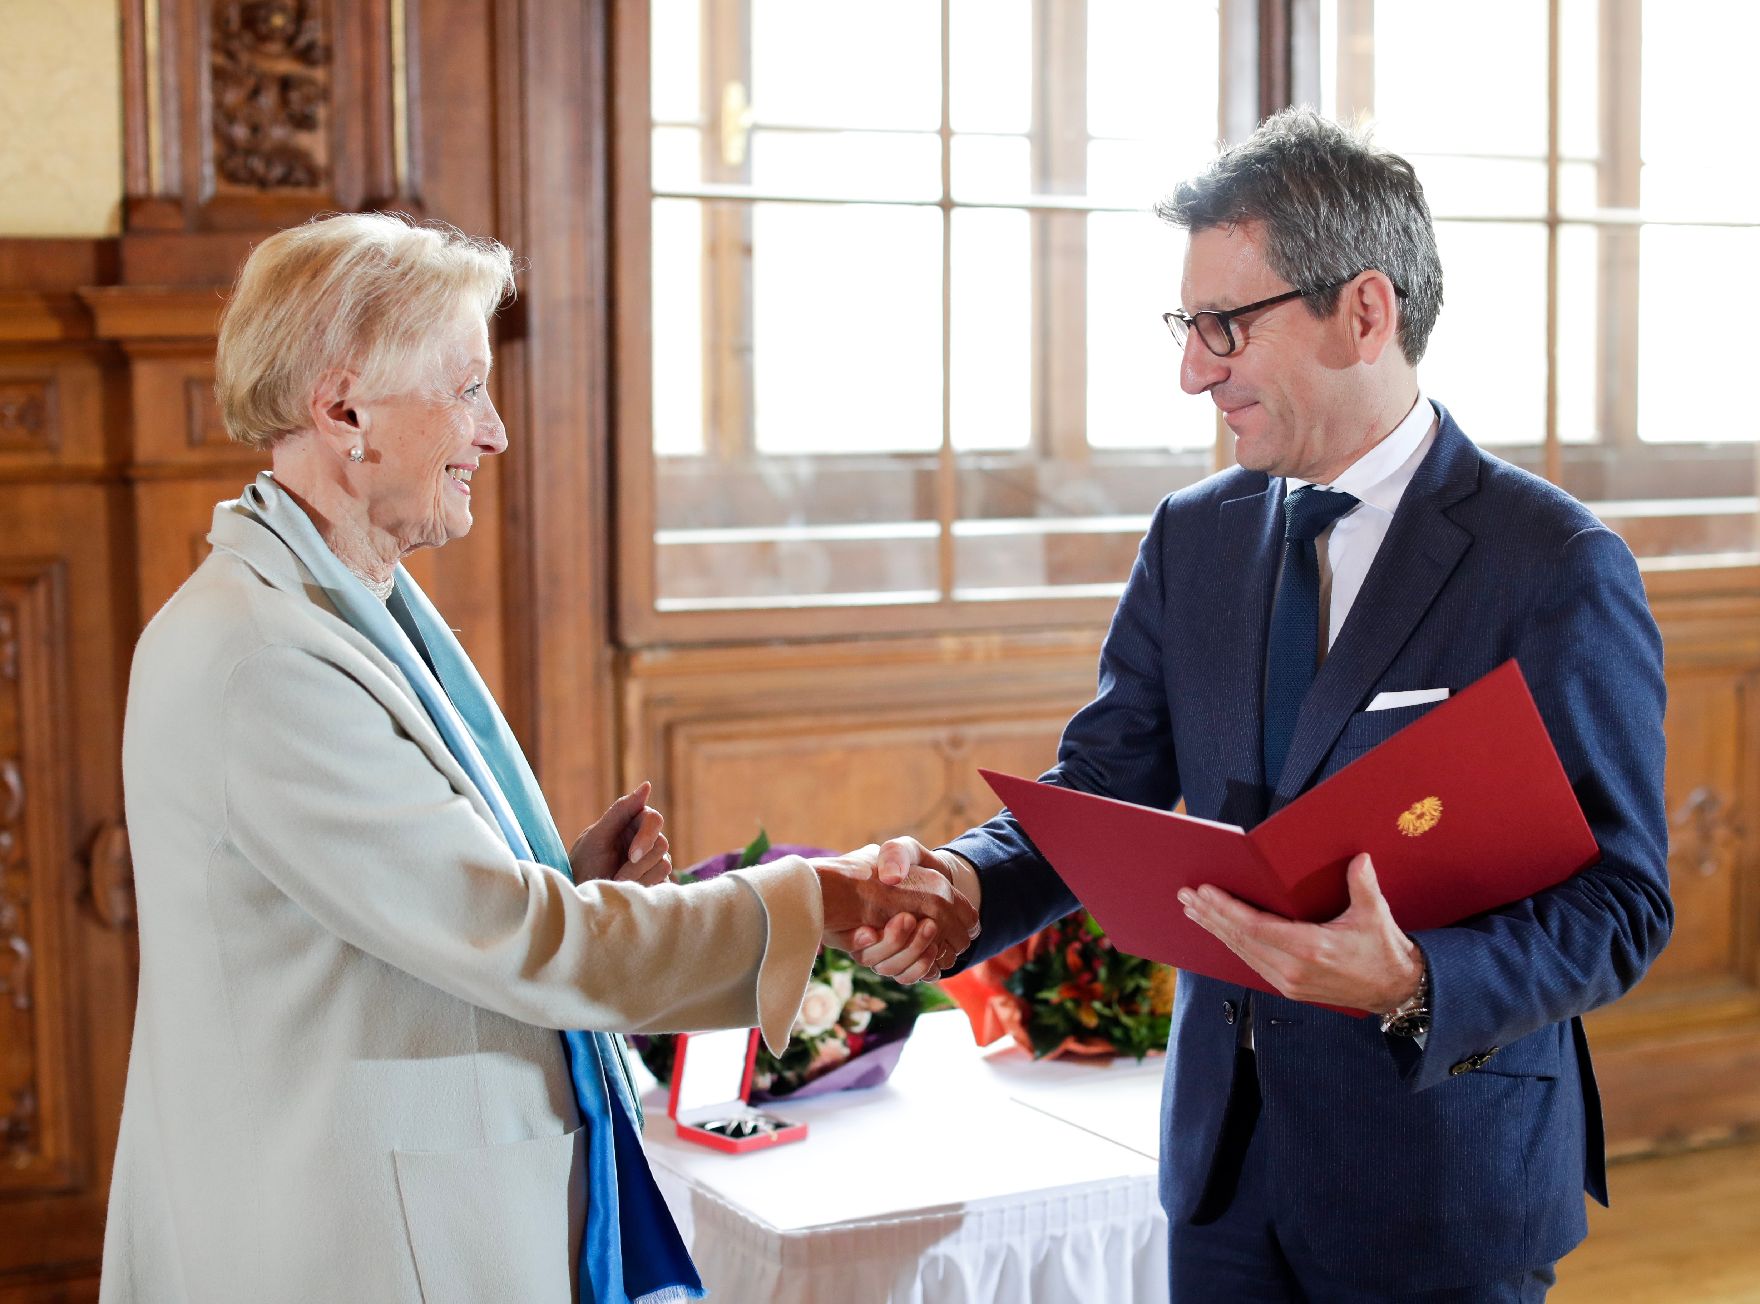 Am 7. November 2018 überreichte Sektionschef Jürgen Meindl (r.) das Große Ehrenzeichen für Verdienste um die Republik Österreich an Karin Kathrein (l.) und die Urkunde über die Verleihung des Berufstitels Professor an Stephan-Matthias Lademann.